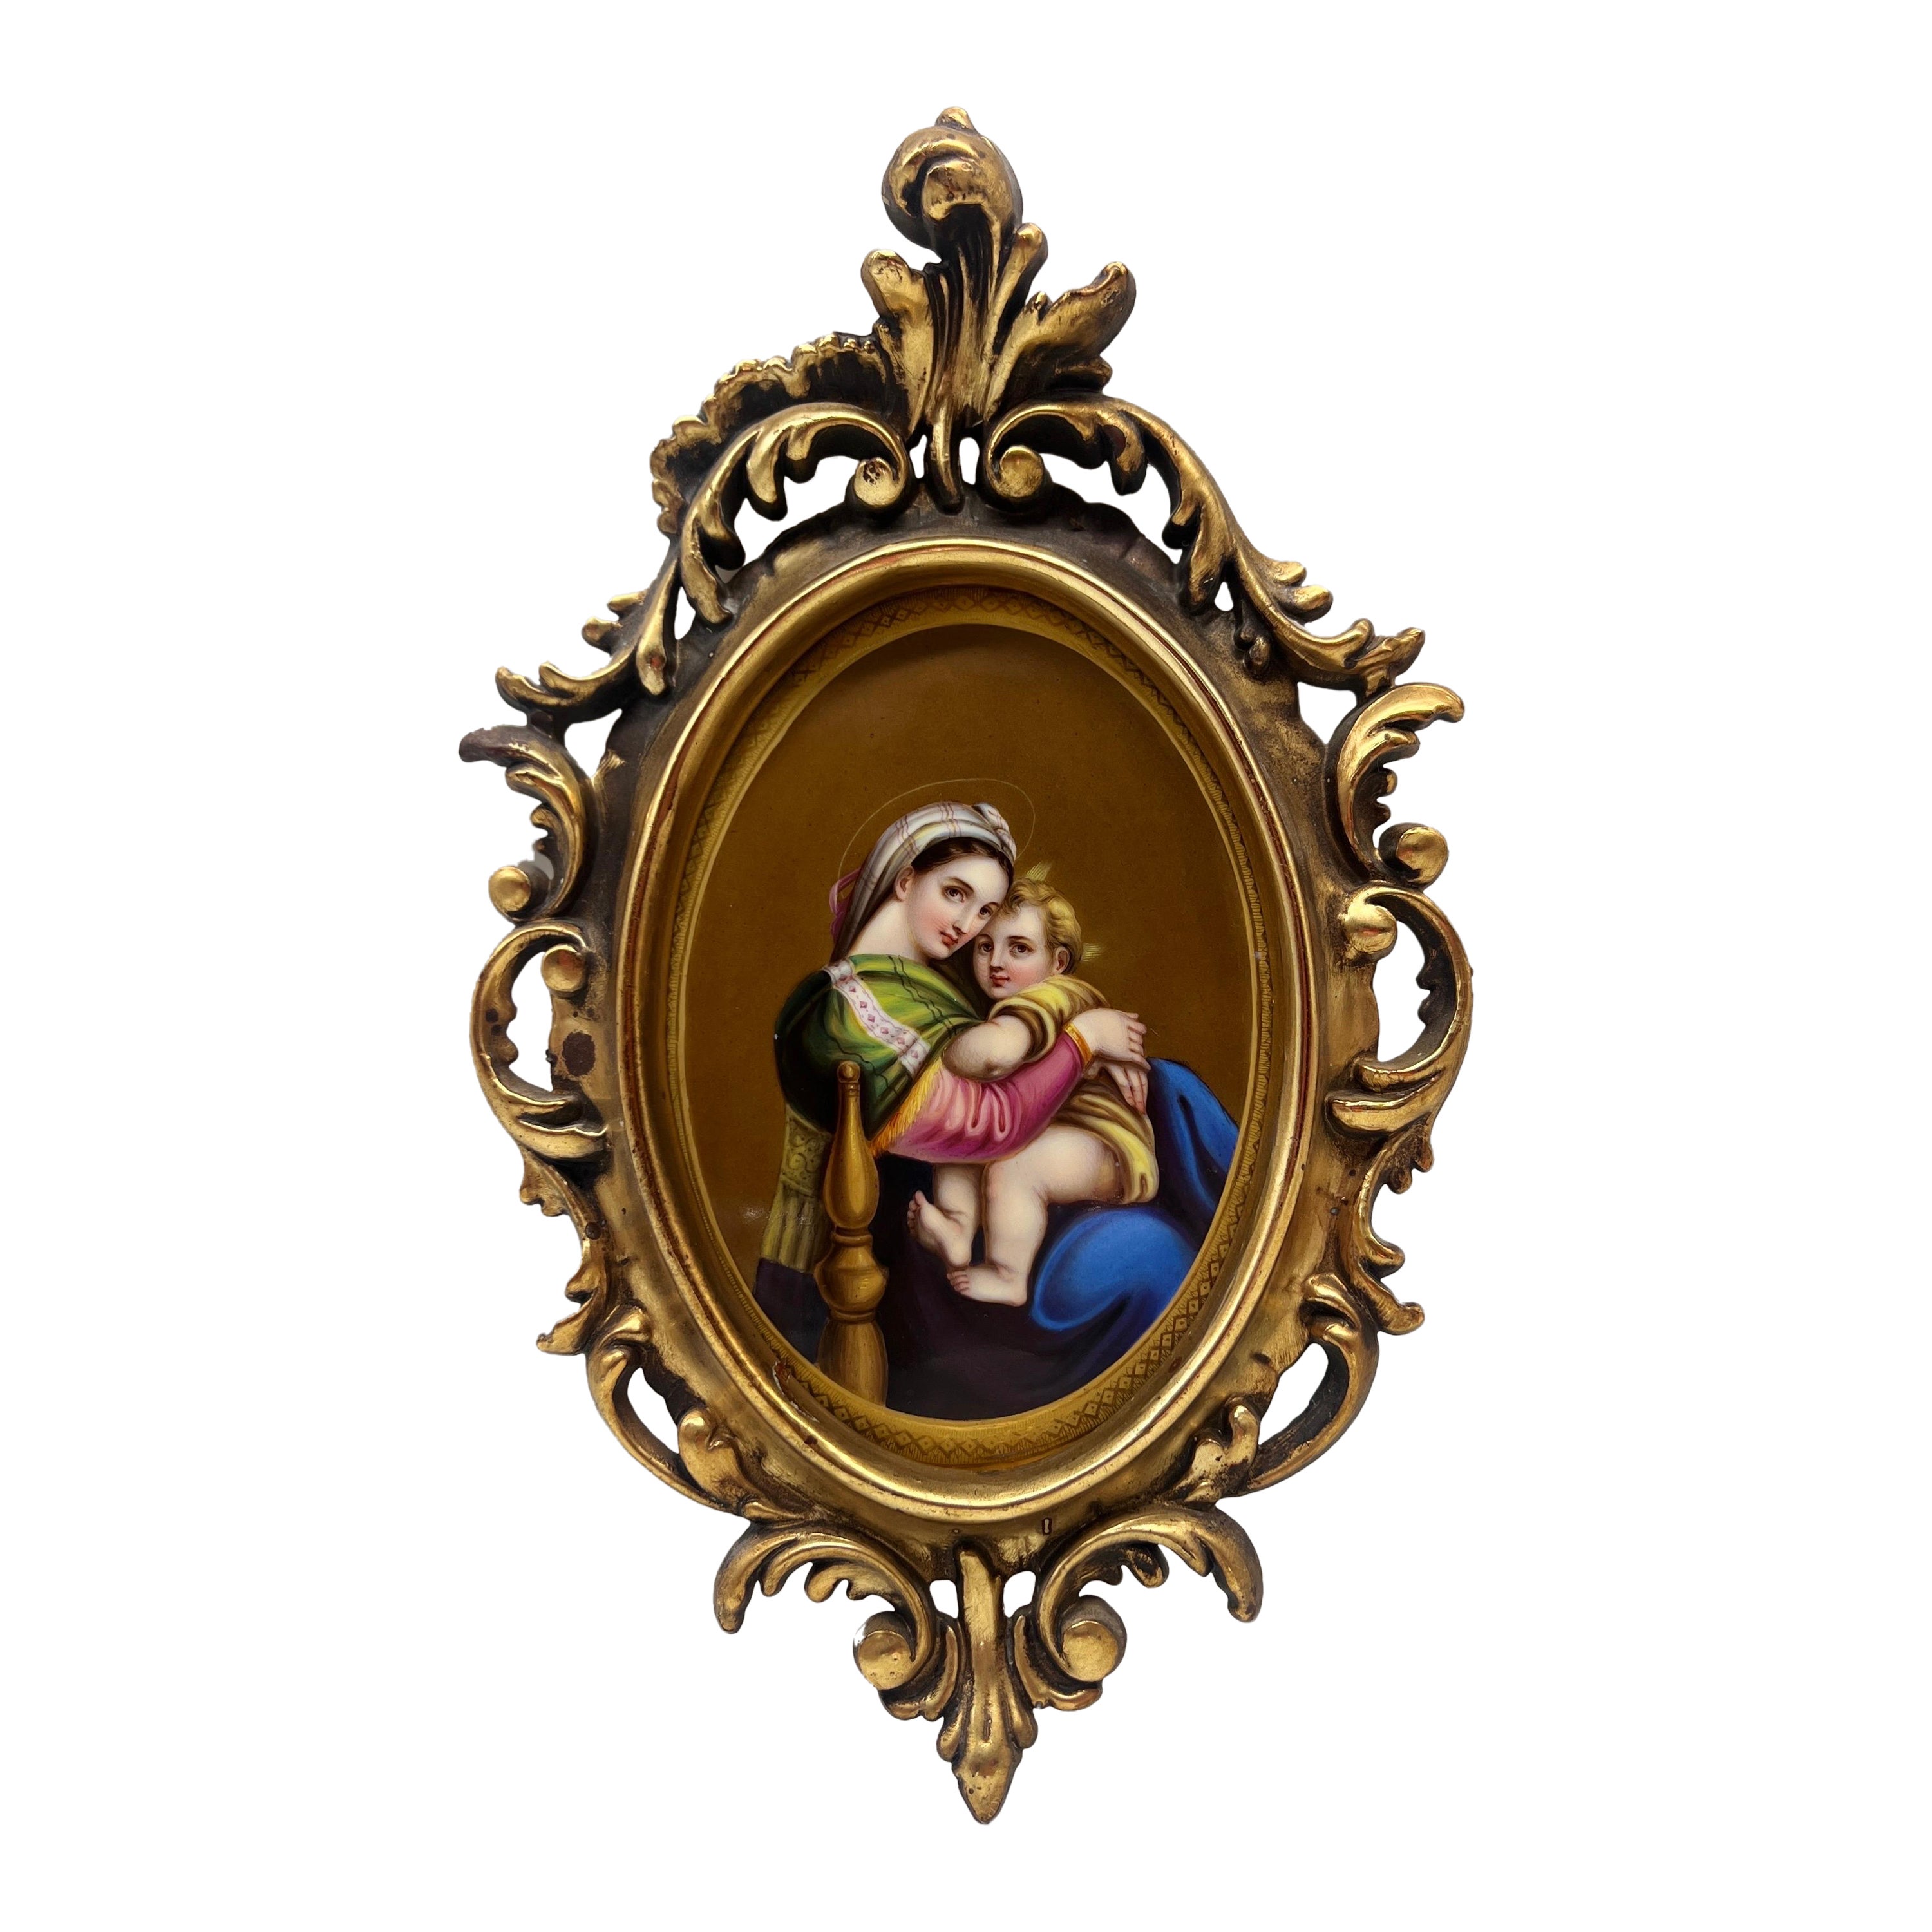 Antique KPM Porcelain Style Plaque "Madonna Della Sedia" After Raphael  For Sale